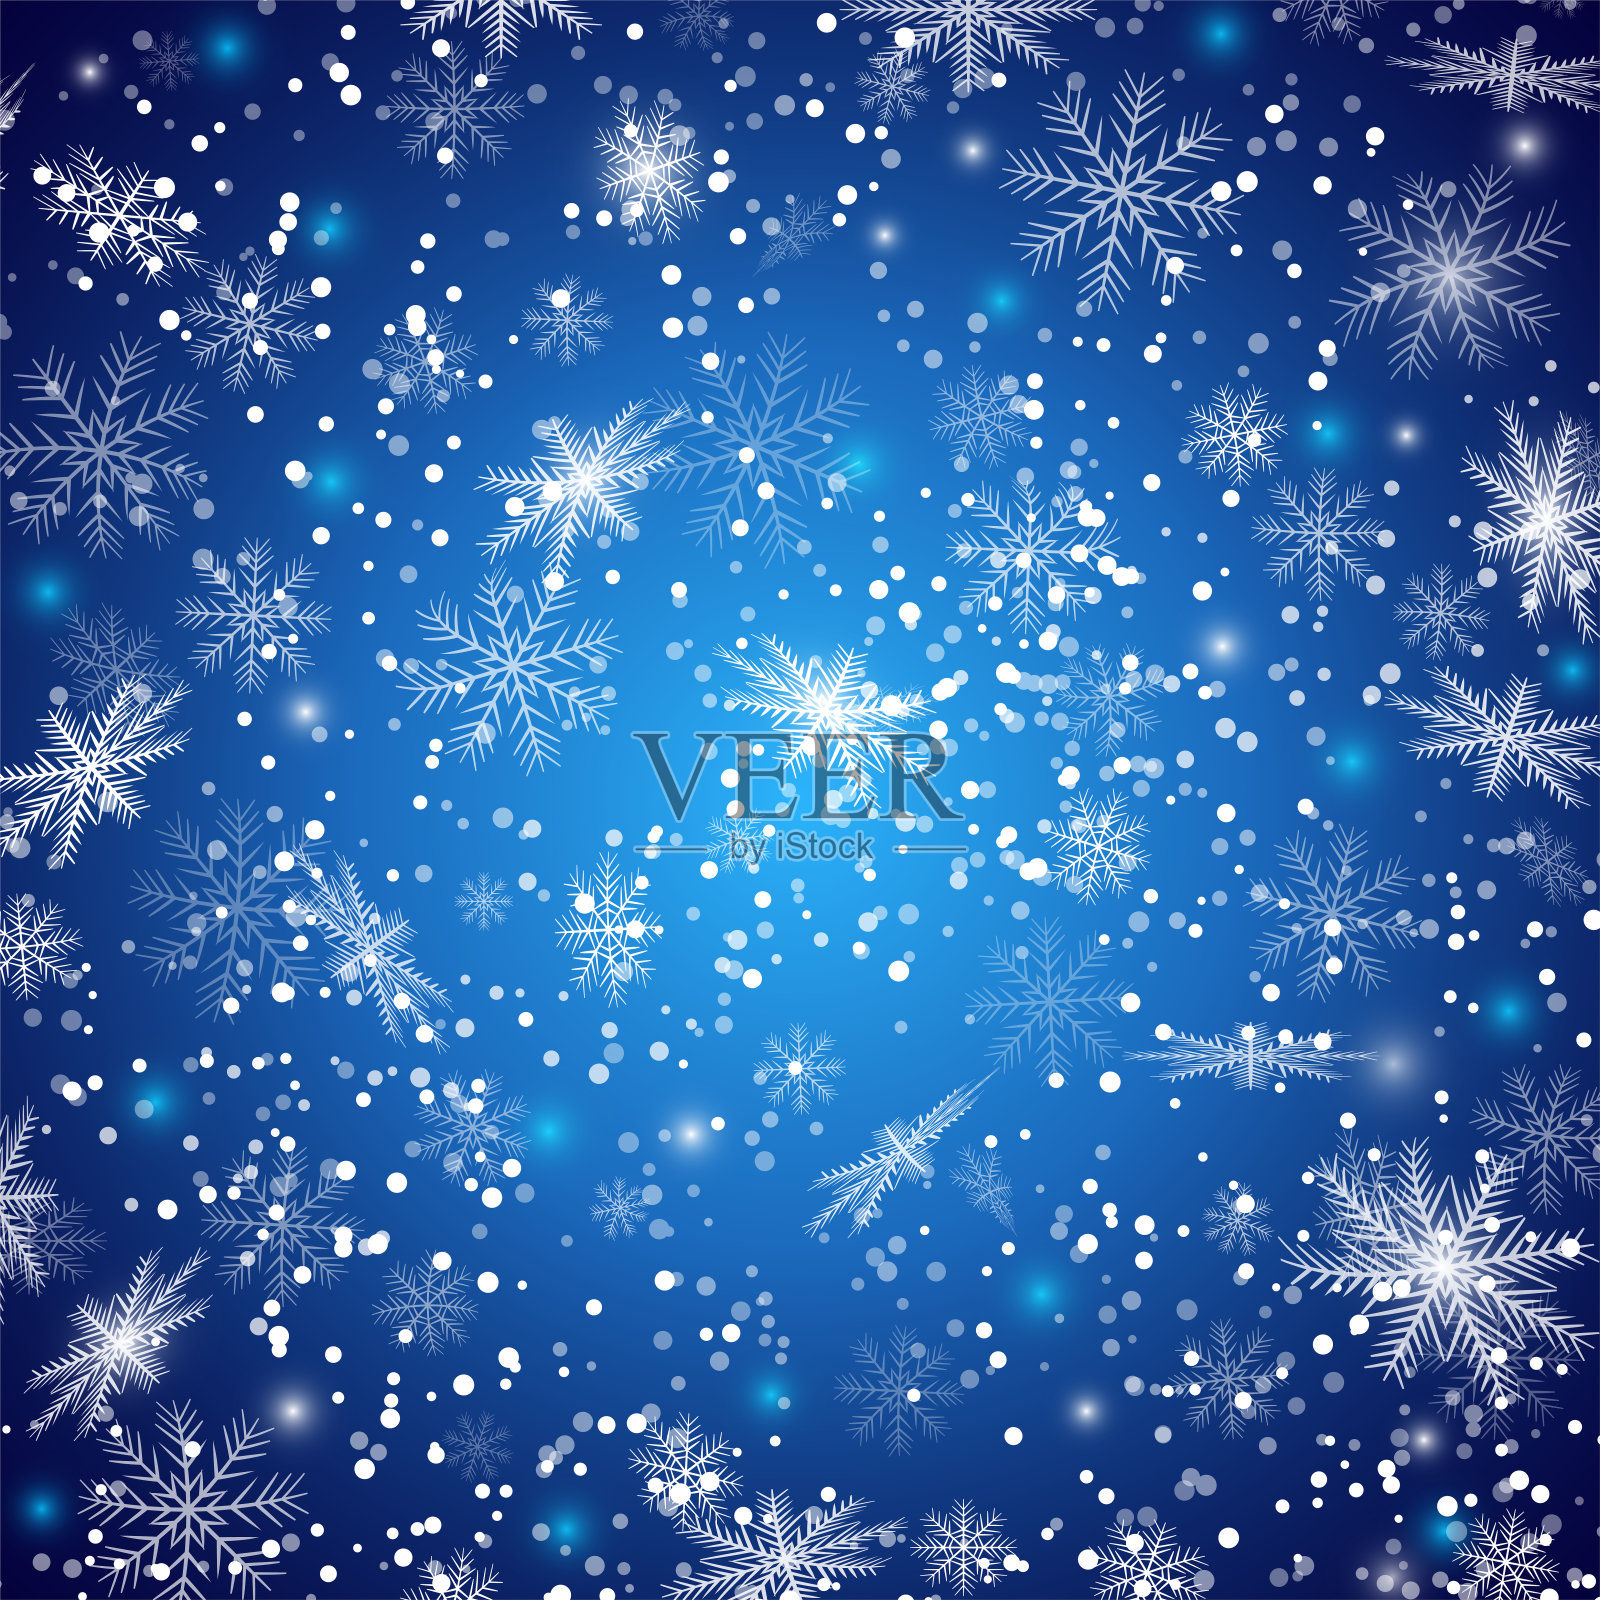 圣诞节蓝色的背景与飞舞的雪花插画图片素材